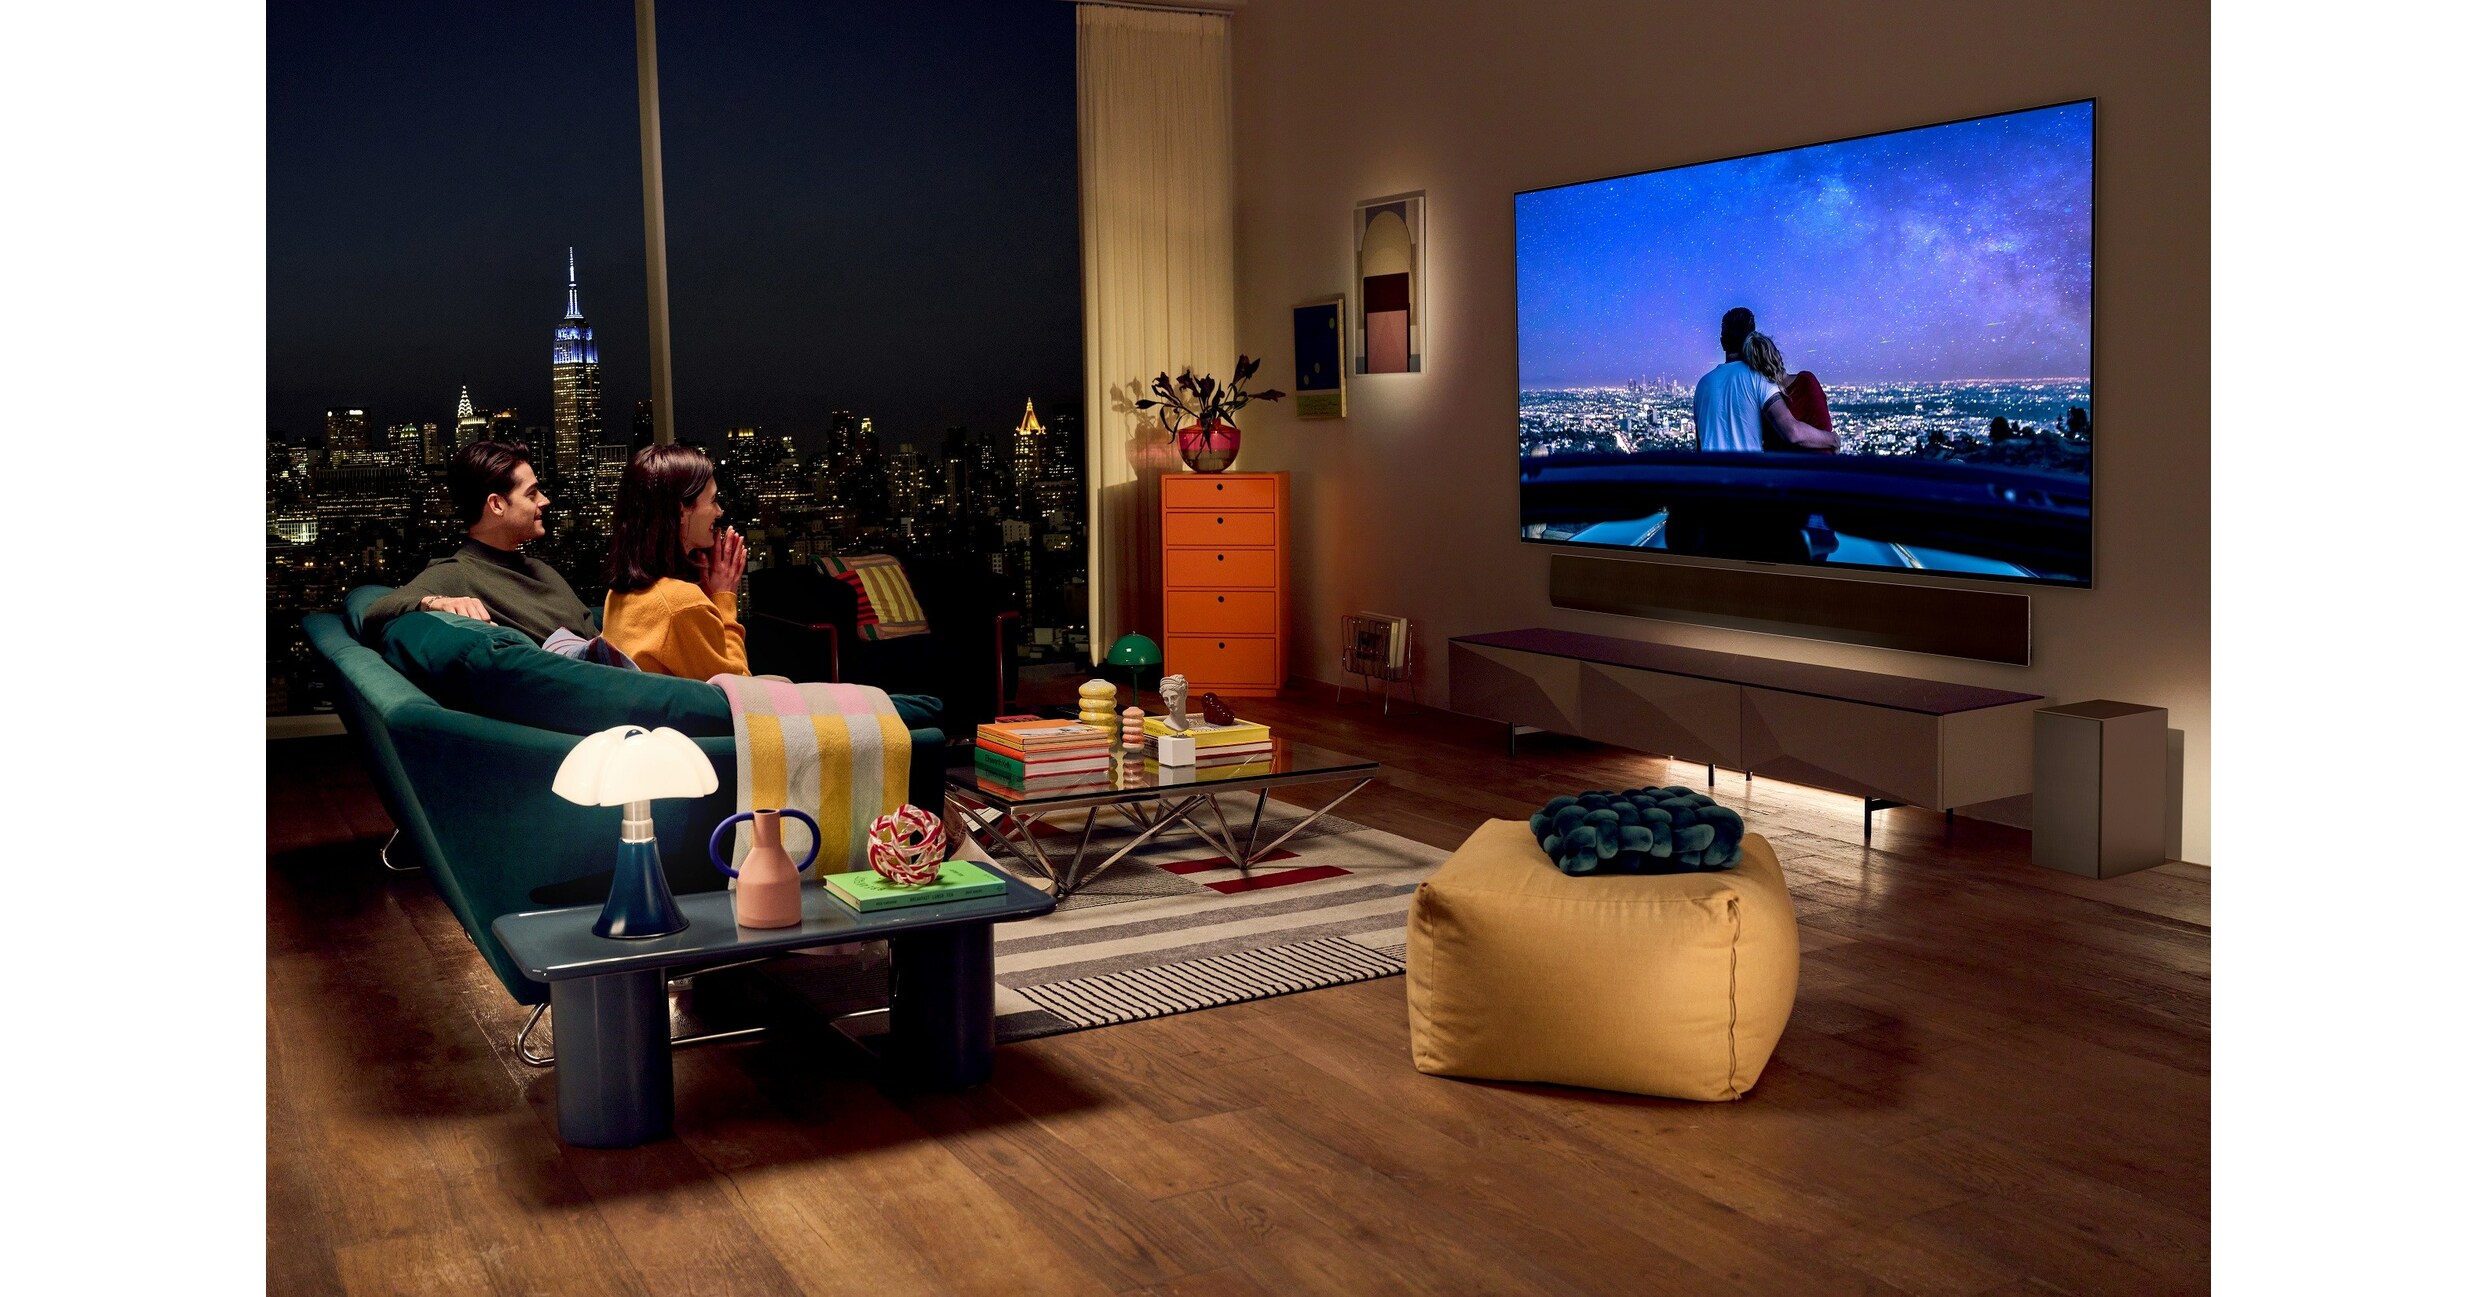 LG anuncia campanha LG TV é 5+ para destacar versatilidade das TVs